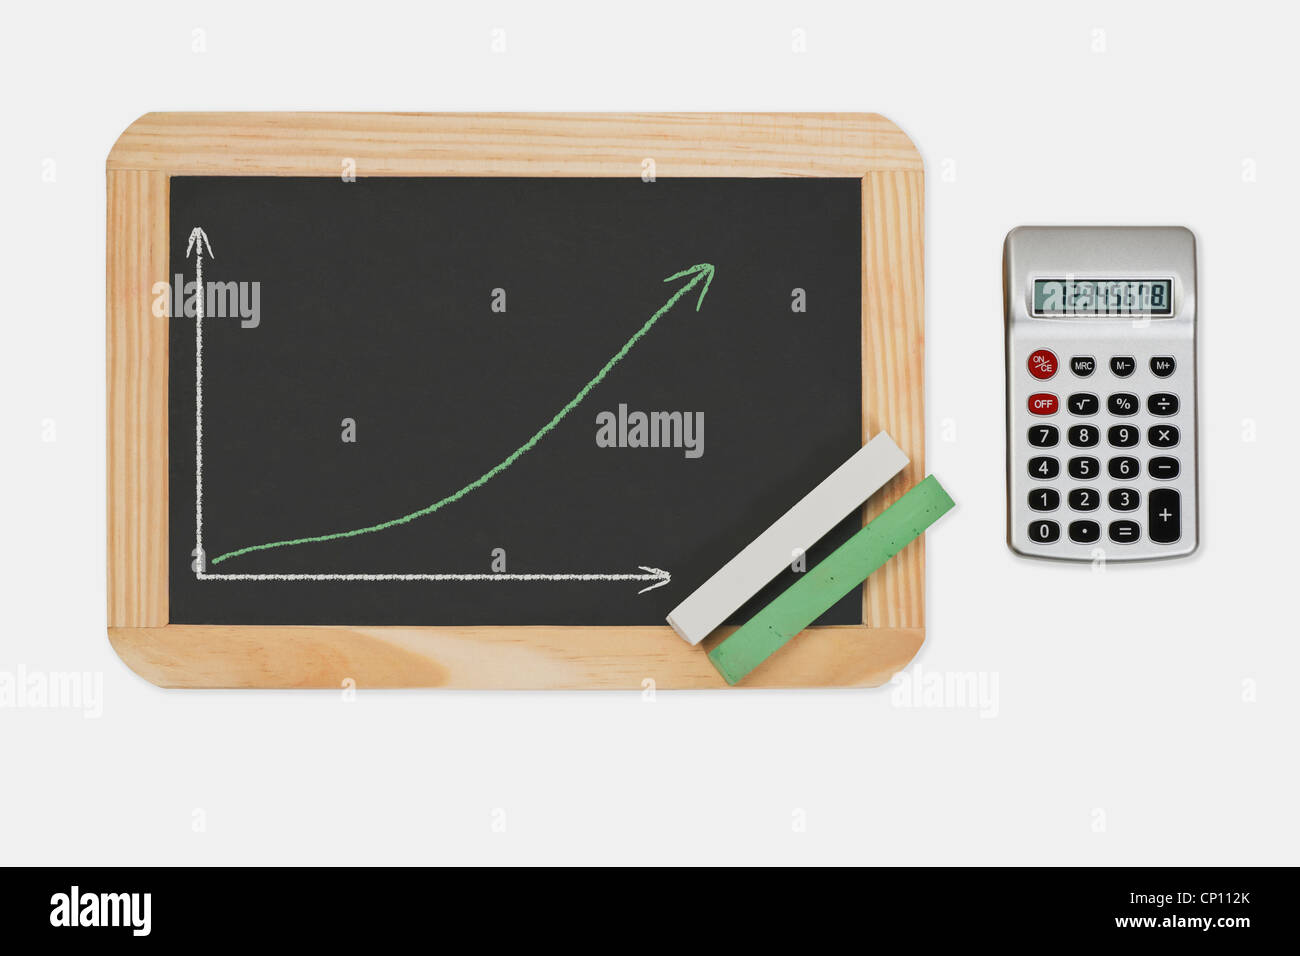 Lavagna, un grafico con una curva crescente. Verde e bianco gesso si trova in un angolo di una calcolatrice tascabile è sul lato destro. Foto Stock